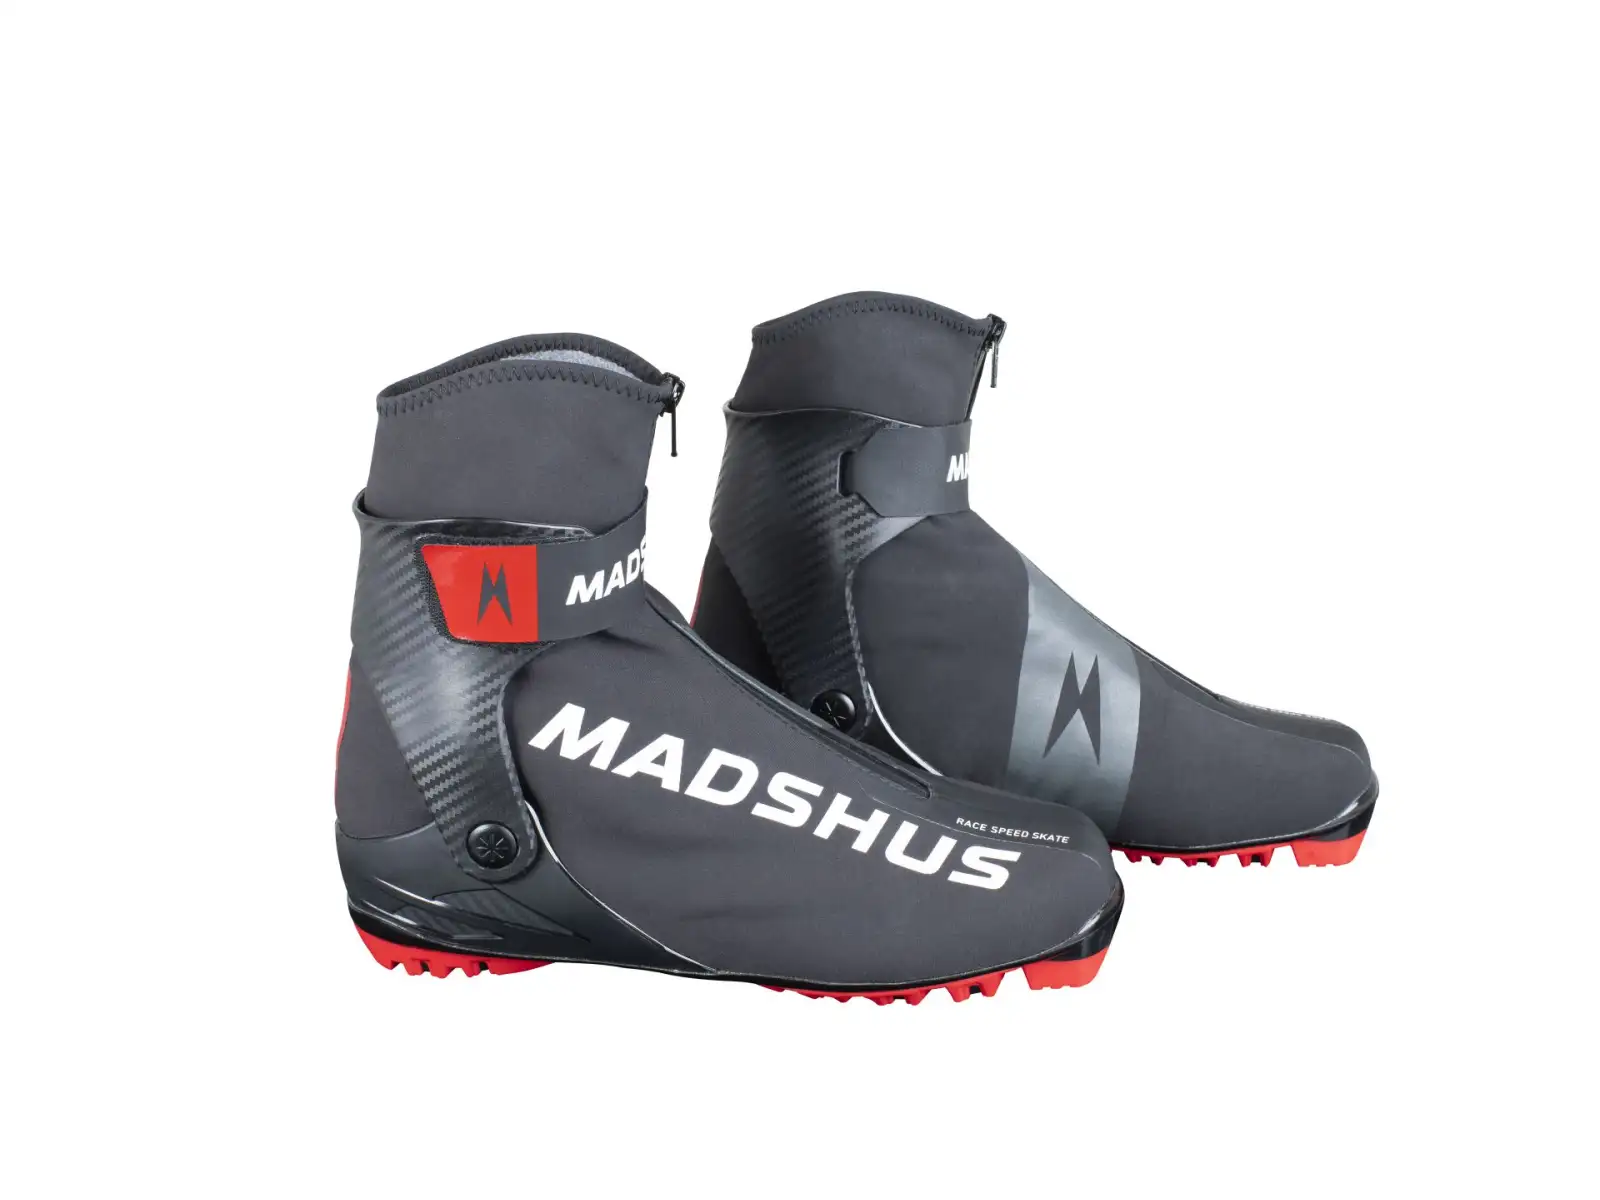 Madshus Race Speed Skate boty na běžky